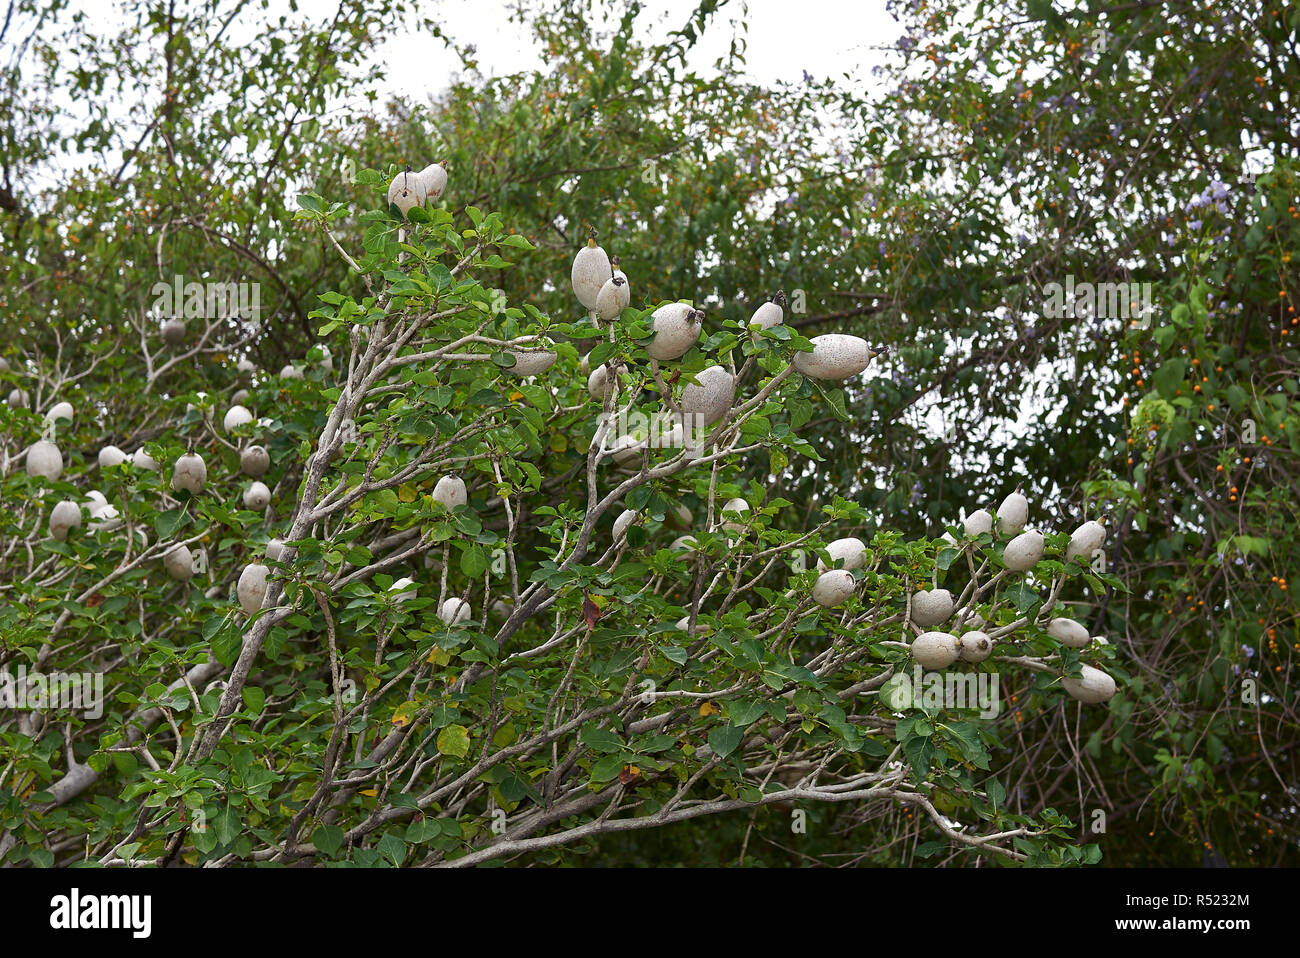 Gardenia thunbergia branch with fruit Stock Photo